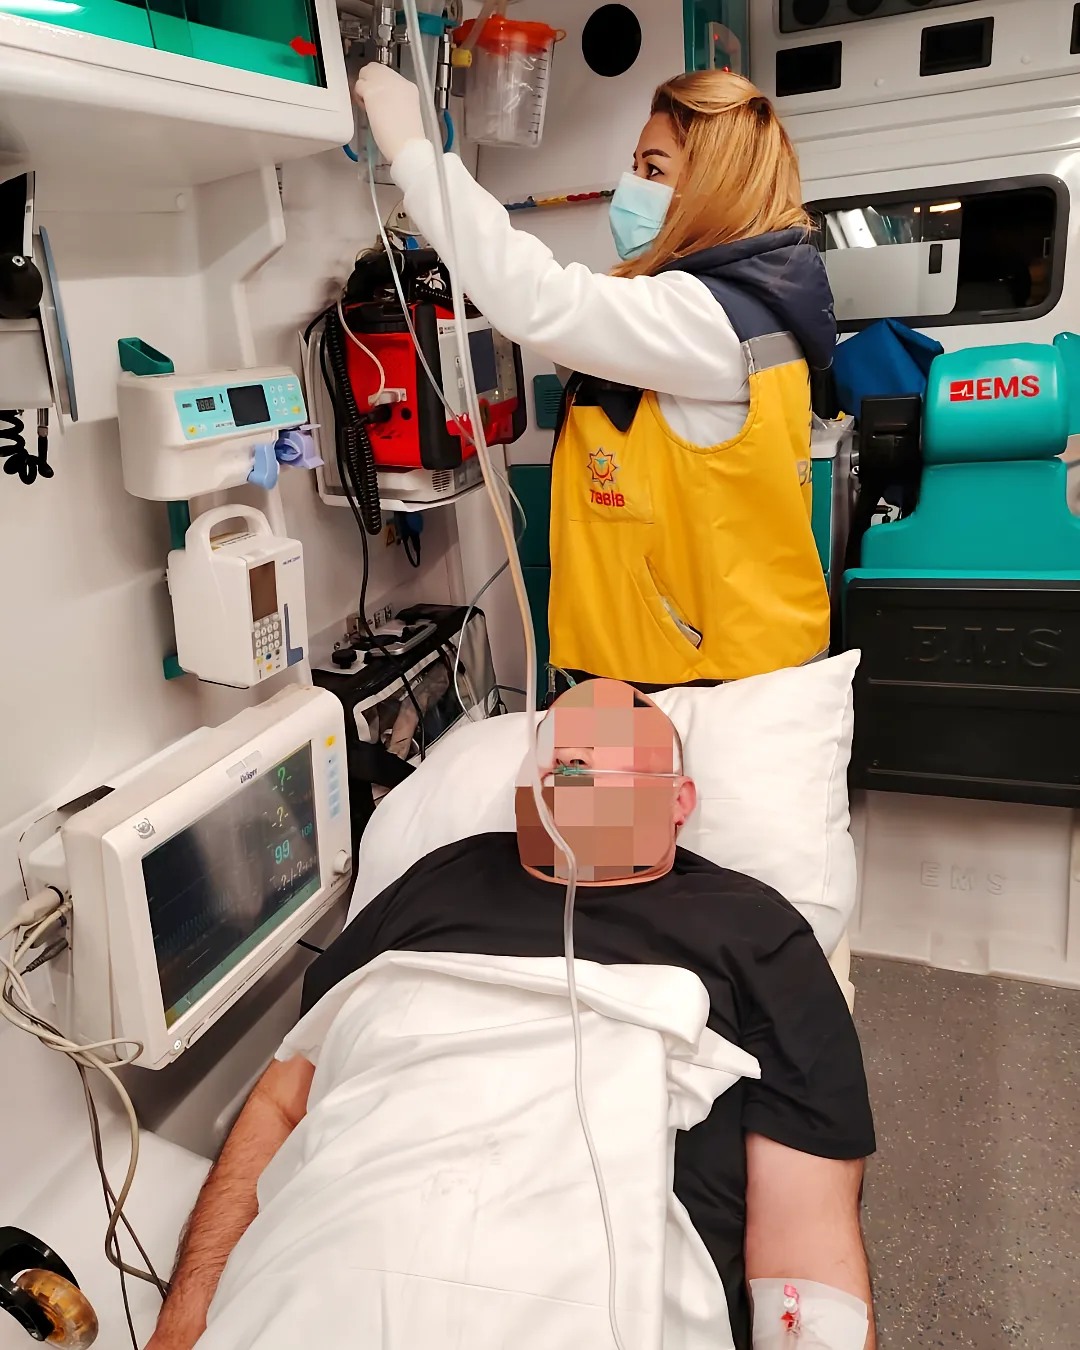 Sinəsində kəskin ağrıları olan 40 yaşlı kişi təcili tibbi yardım briqadasının köməyi ilə Olimp Hospitala hospitalizasiya edilib